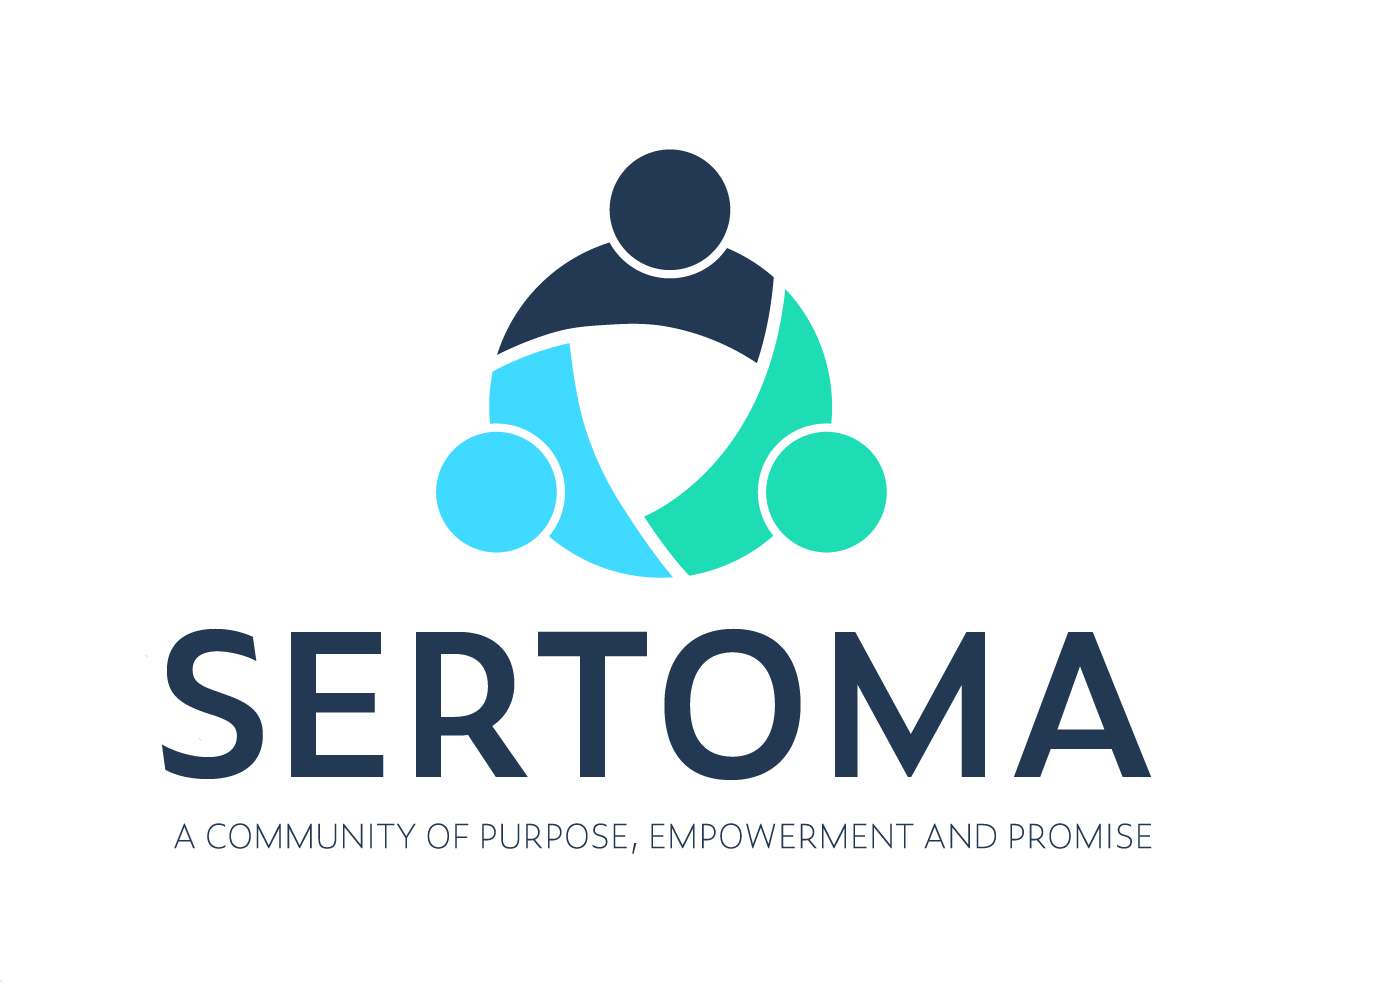 sertoma-center-logo-04